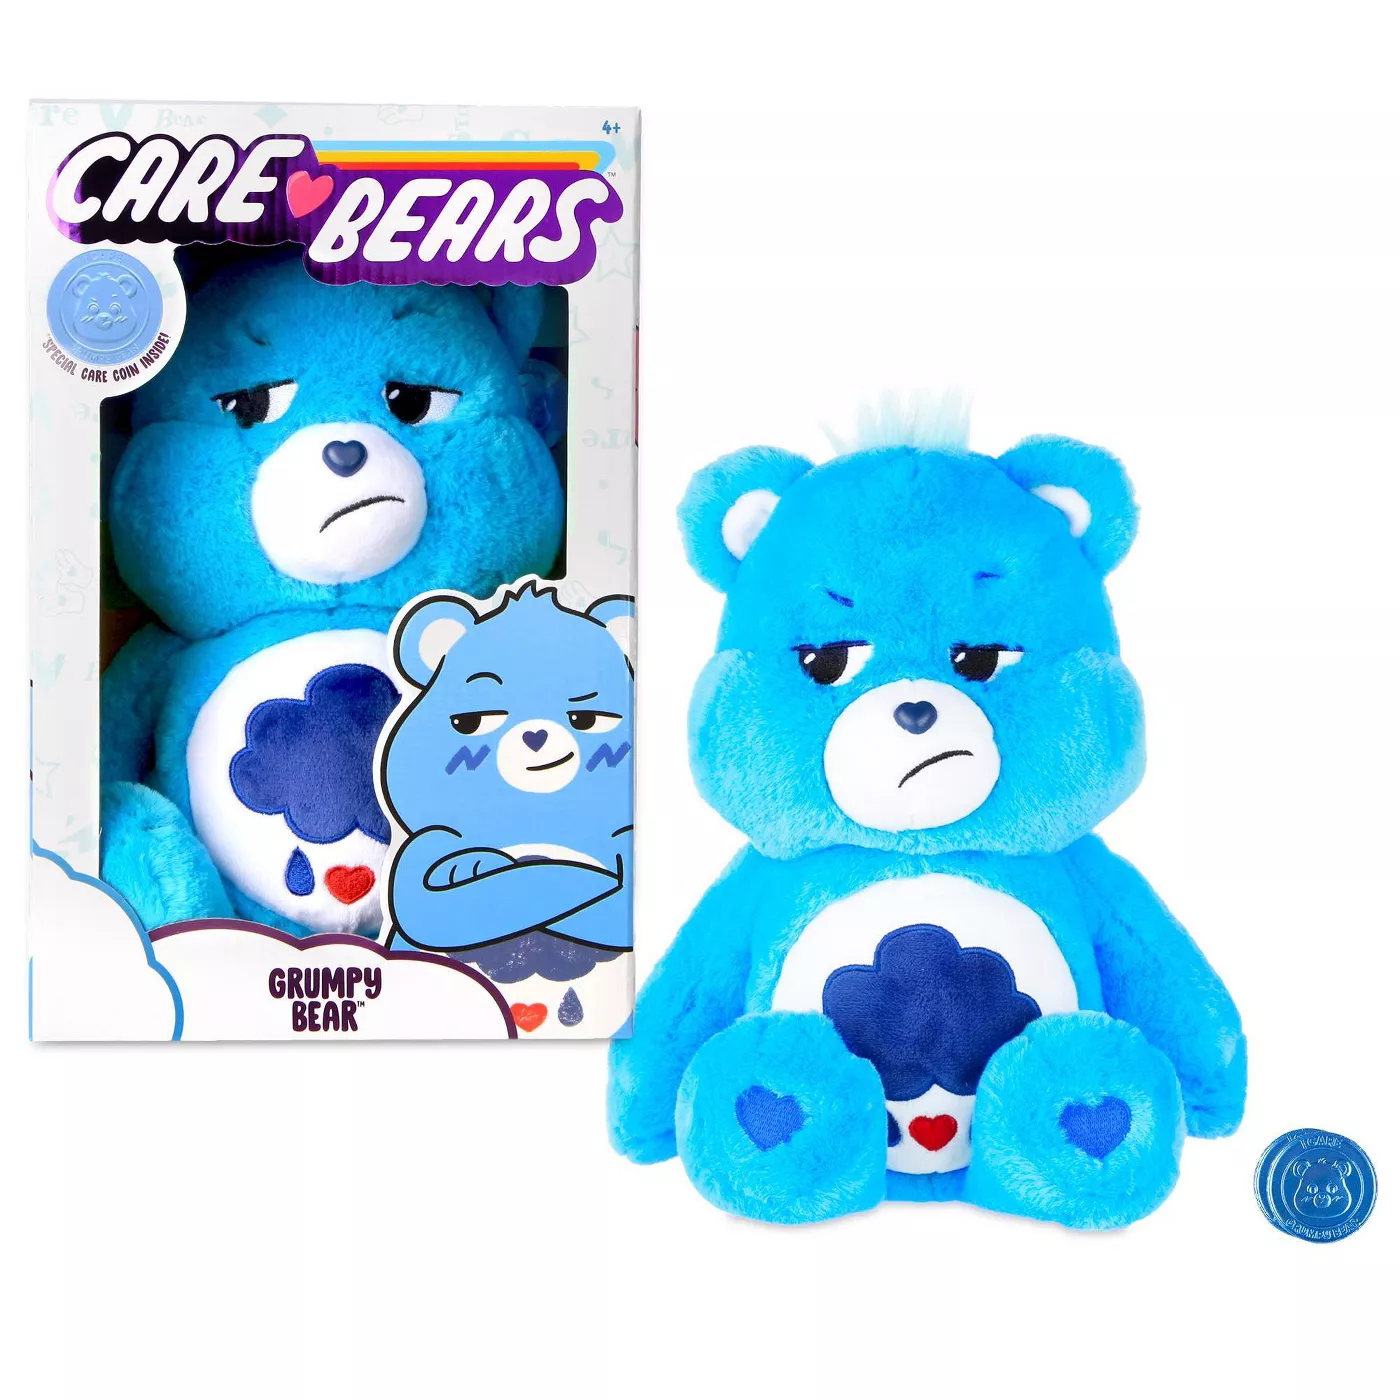 Grumpy Care Bear Plush at Targ...